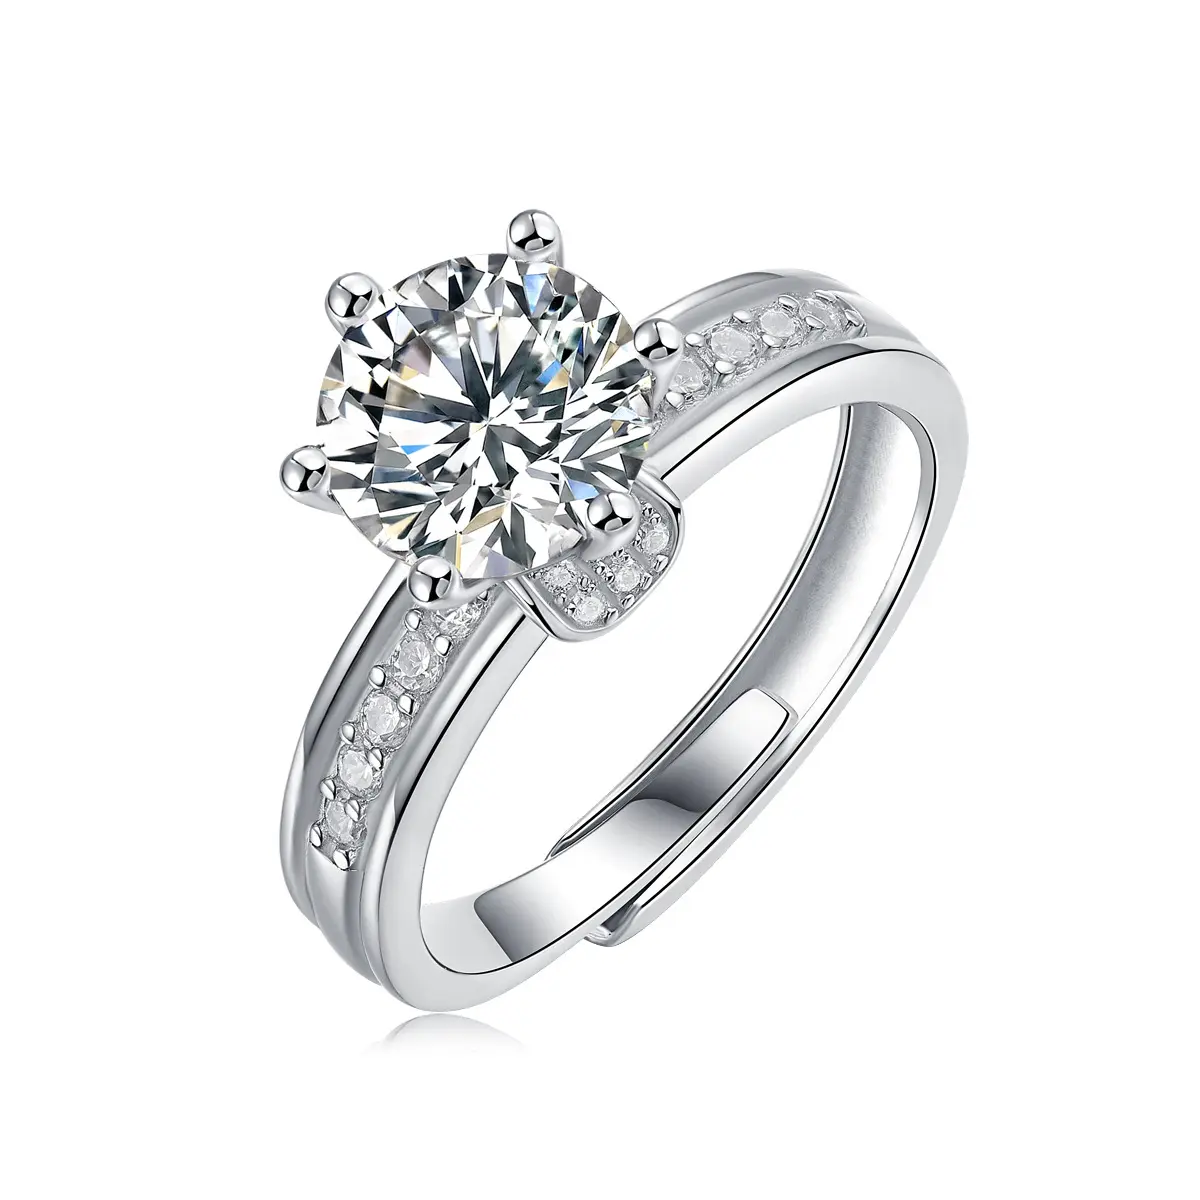 장면 현대 925 스털링 실버 1ctvs D 컬러 모이사나이트 다이아몬드 반지 여성 발톱 설정 조정 가능한 액세서리 반지